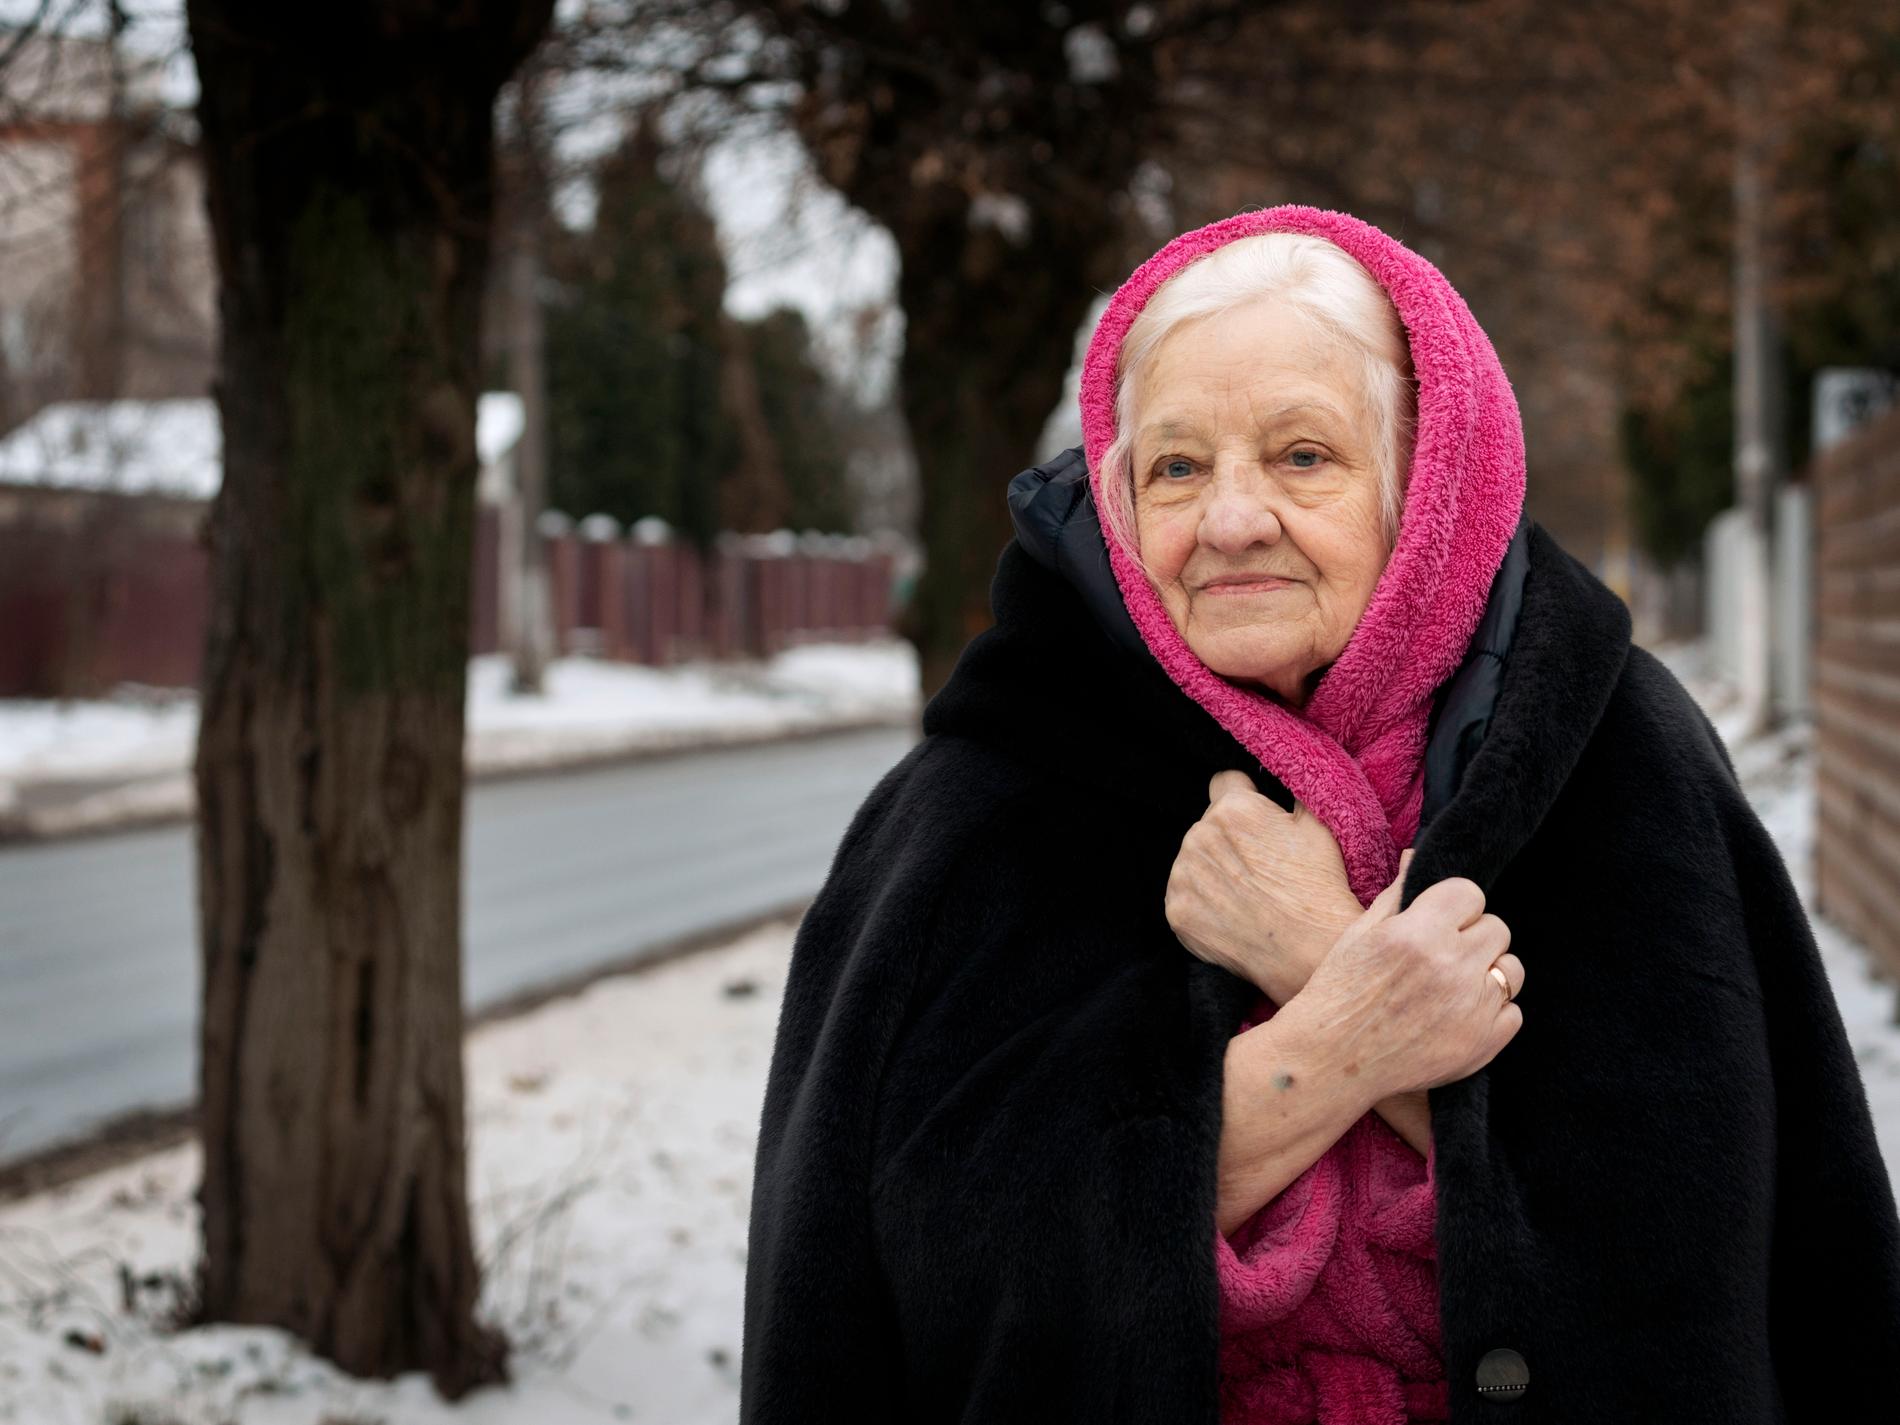 Tyskar, ryssar – 84-åring minns alla ockupanter